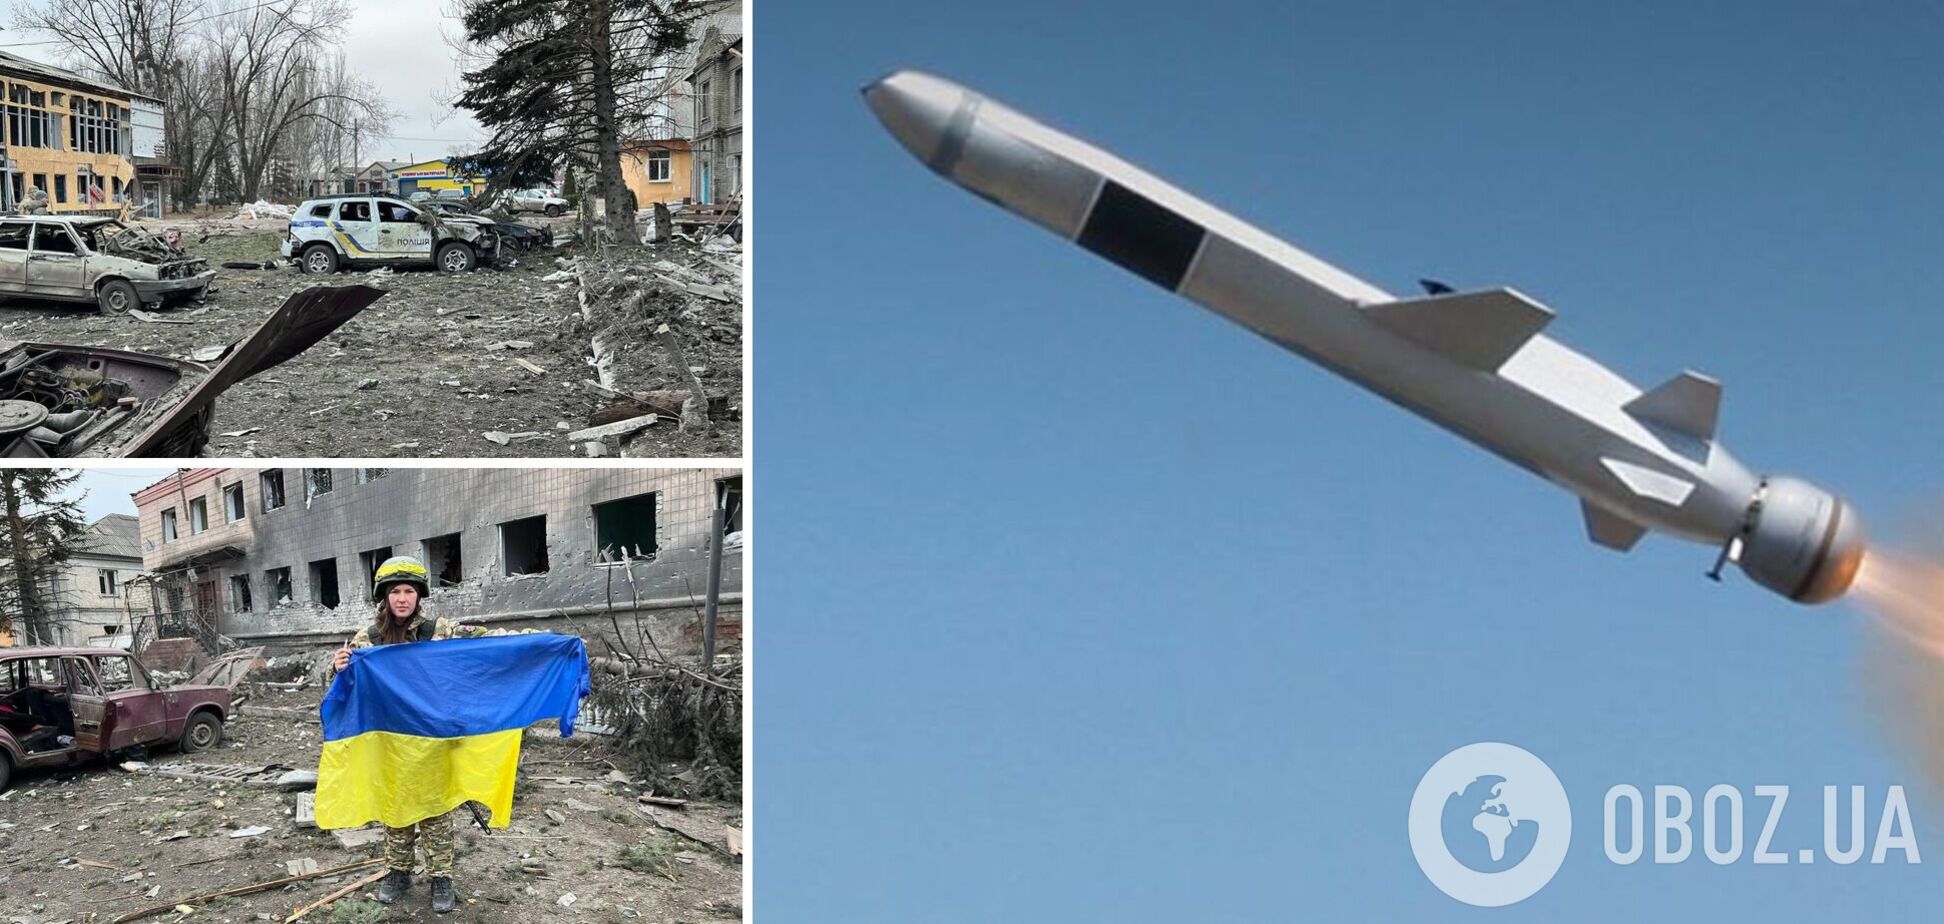 Российская ракета С-300 попала в отдел полиции в Лимане. Фото и видео последствий